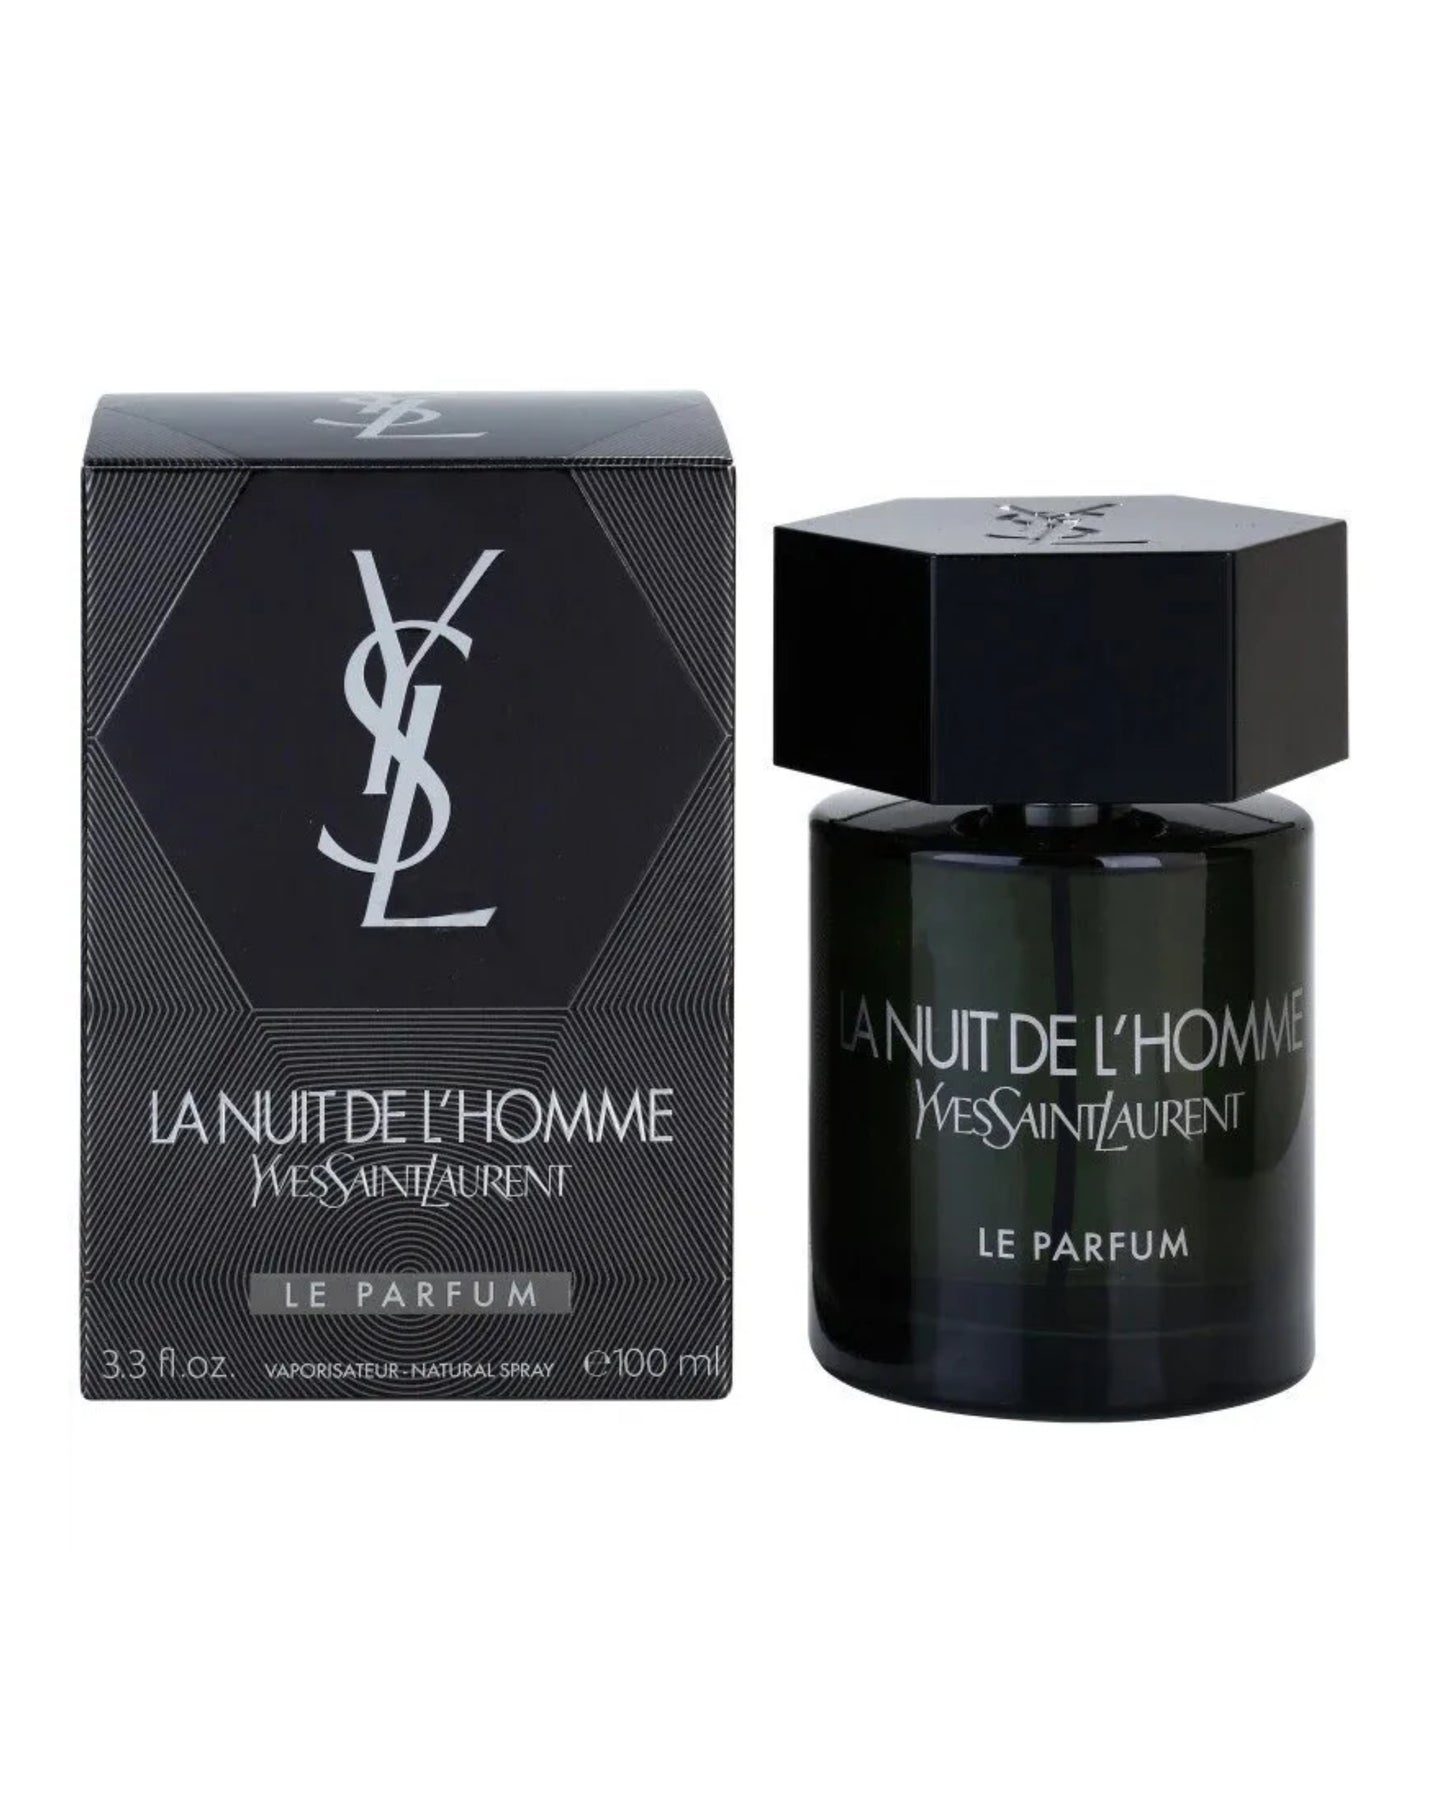 YVES SAINT LAURENT - LA NUIT DE L'HOMME Le Parfum-foryou-vente de parfum original au Maroc-parfum original Maroc-prix maroc-foryou parfum original